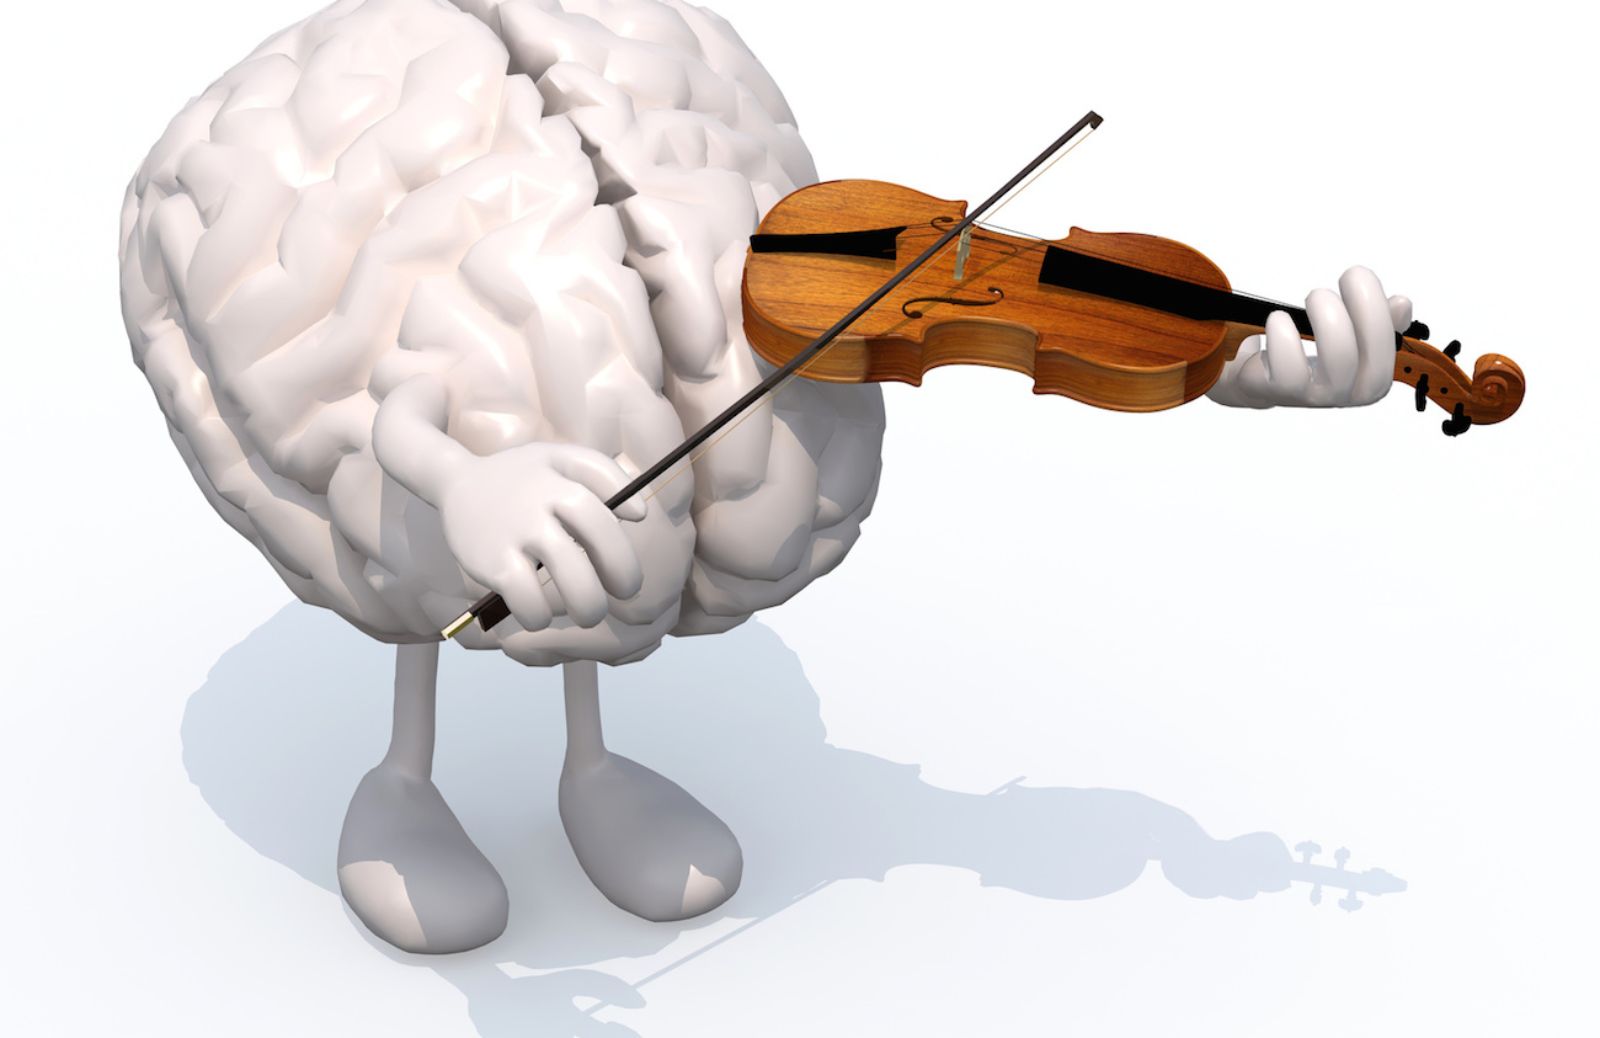 Cervello, ascoltare musica classica protegge dall'invecchiamento